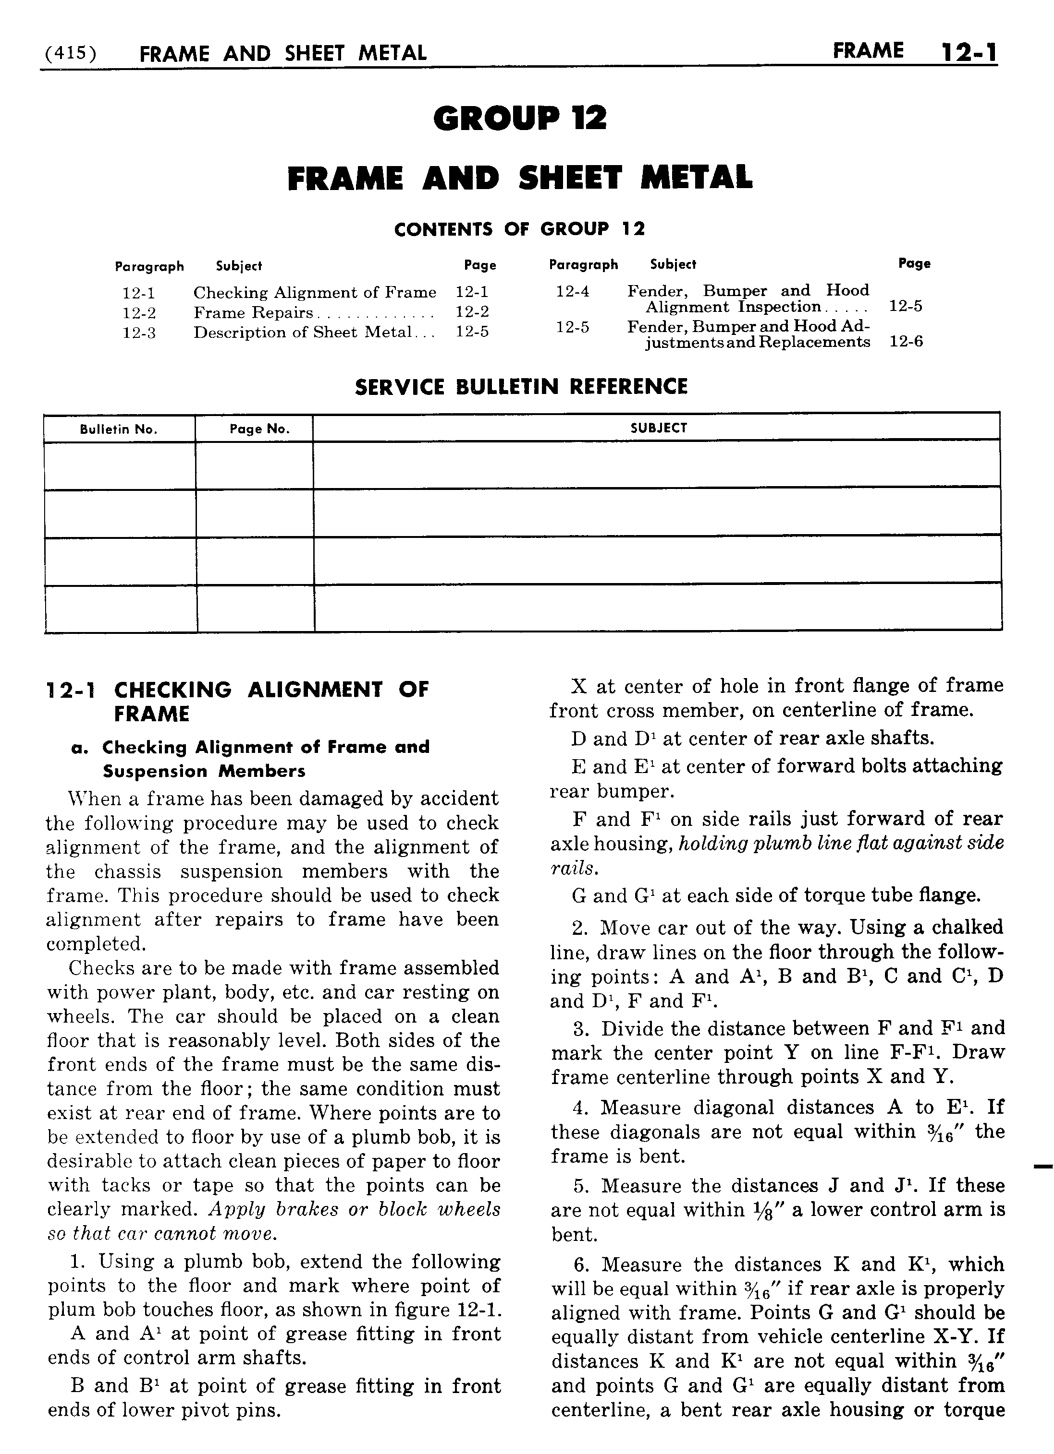 n_13 1955 Buick Shop Manual - Frame & Sheet Metal-001-001.jpg